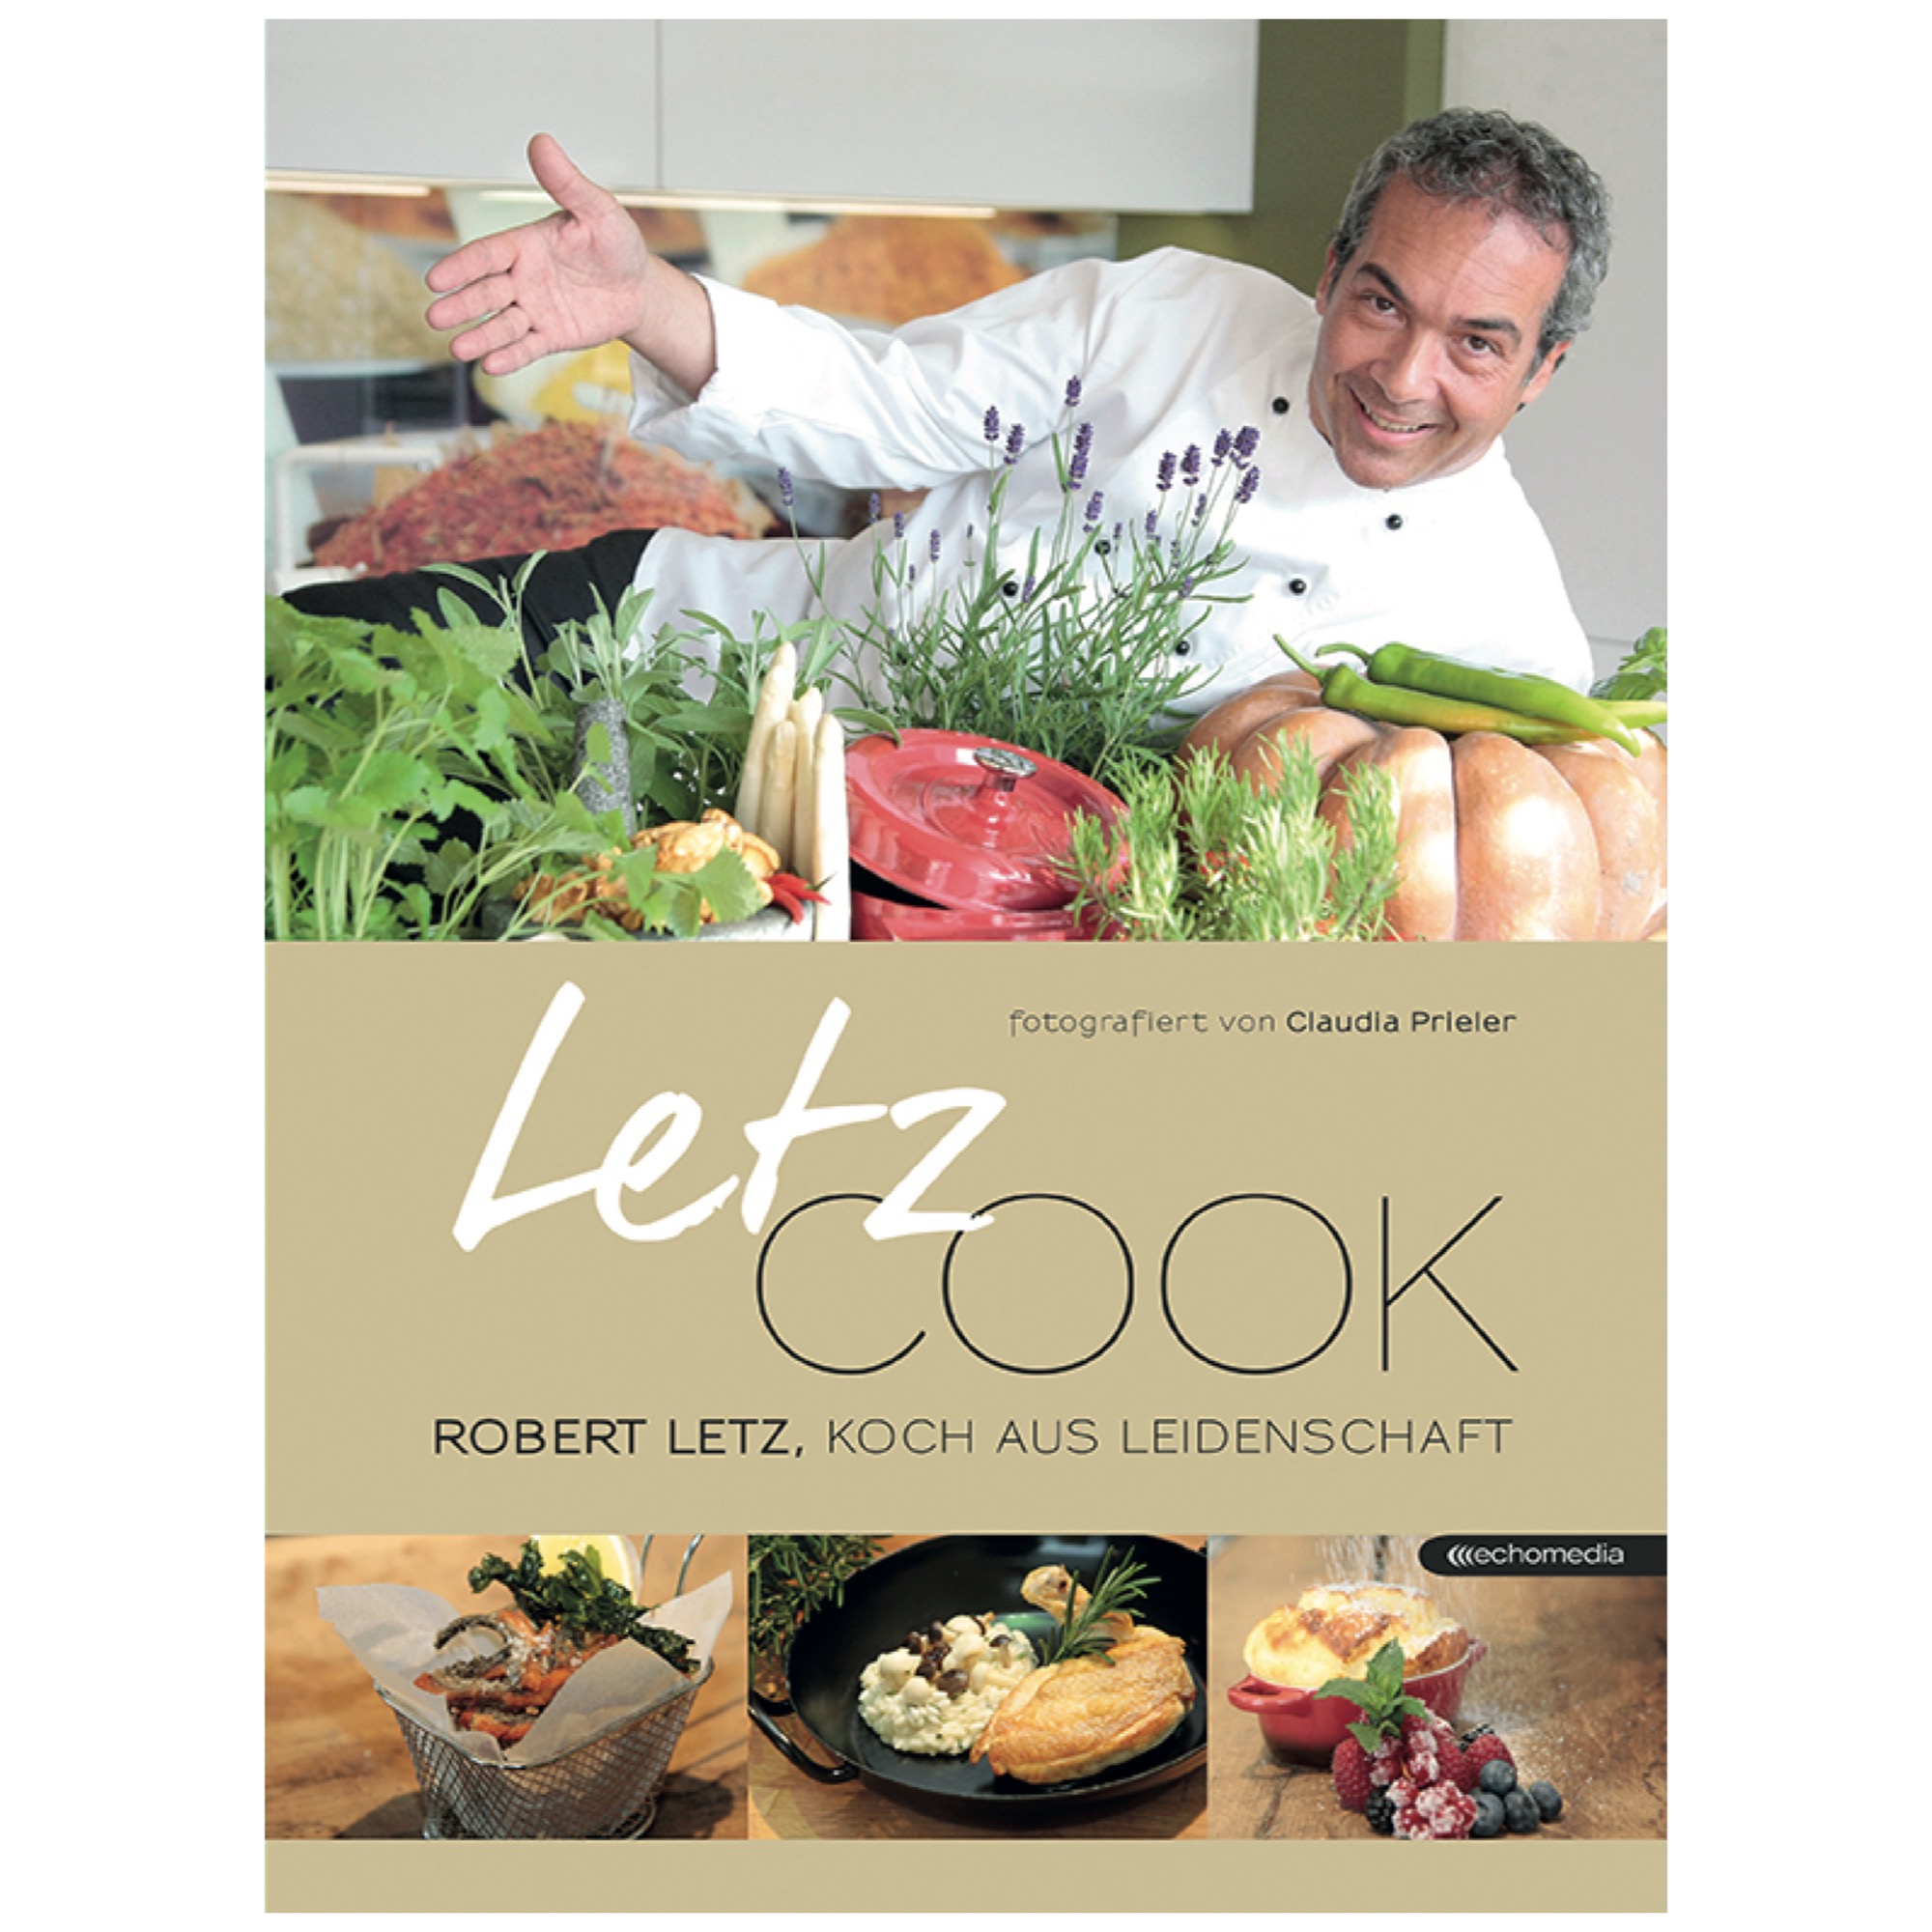 Robert Letz, Letz cook